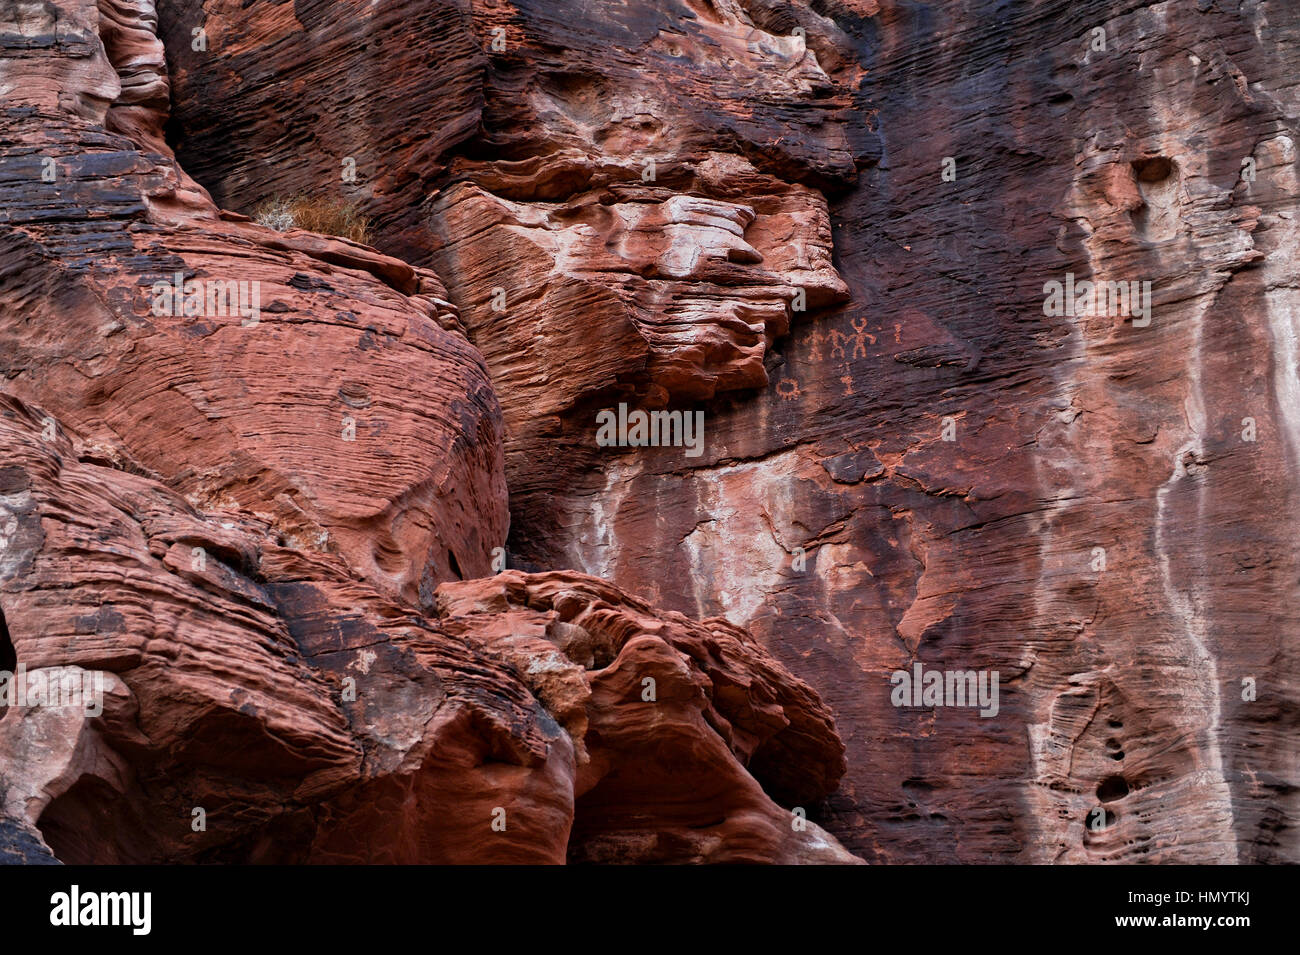 La Valle del Fuoco del parco statale ha duemila anni di petroglifi scolpiti nel massiccio di arenaria rossa formazioni nel deserto Mohave. Foto Stock